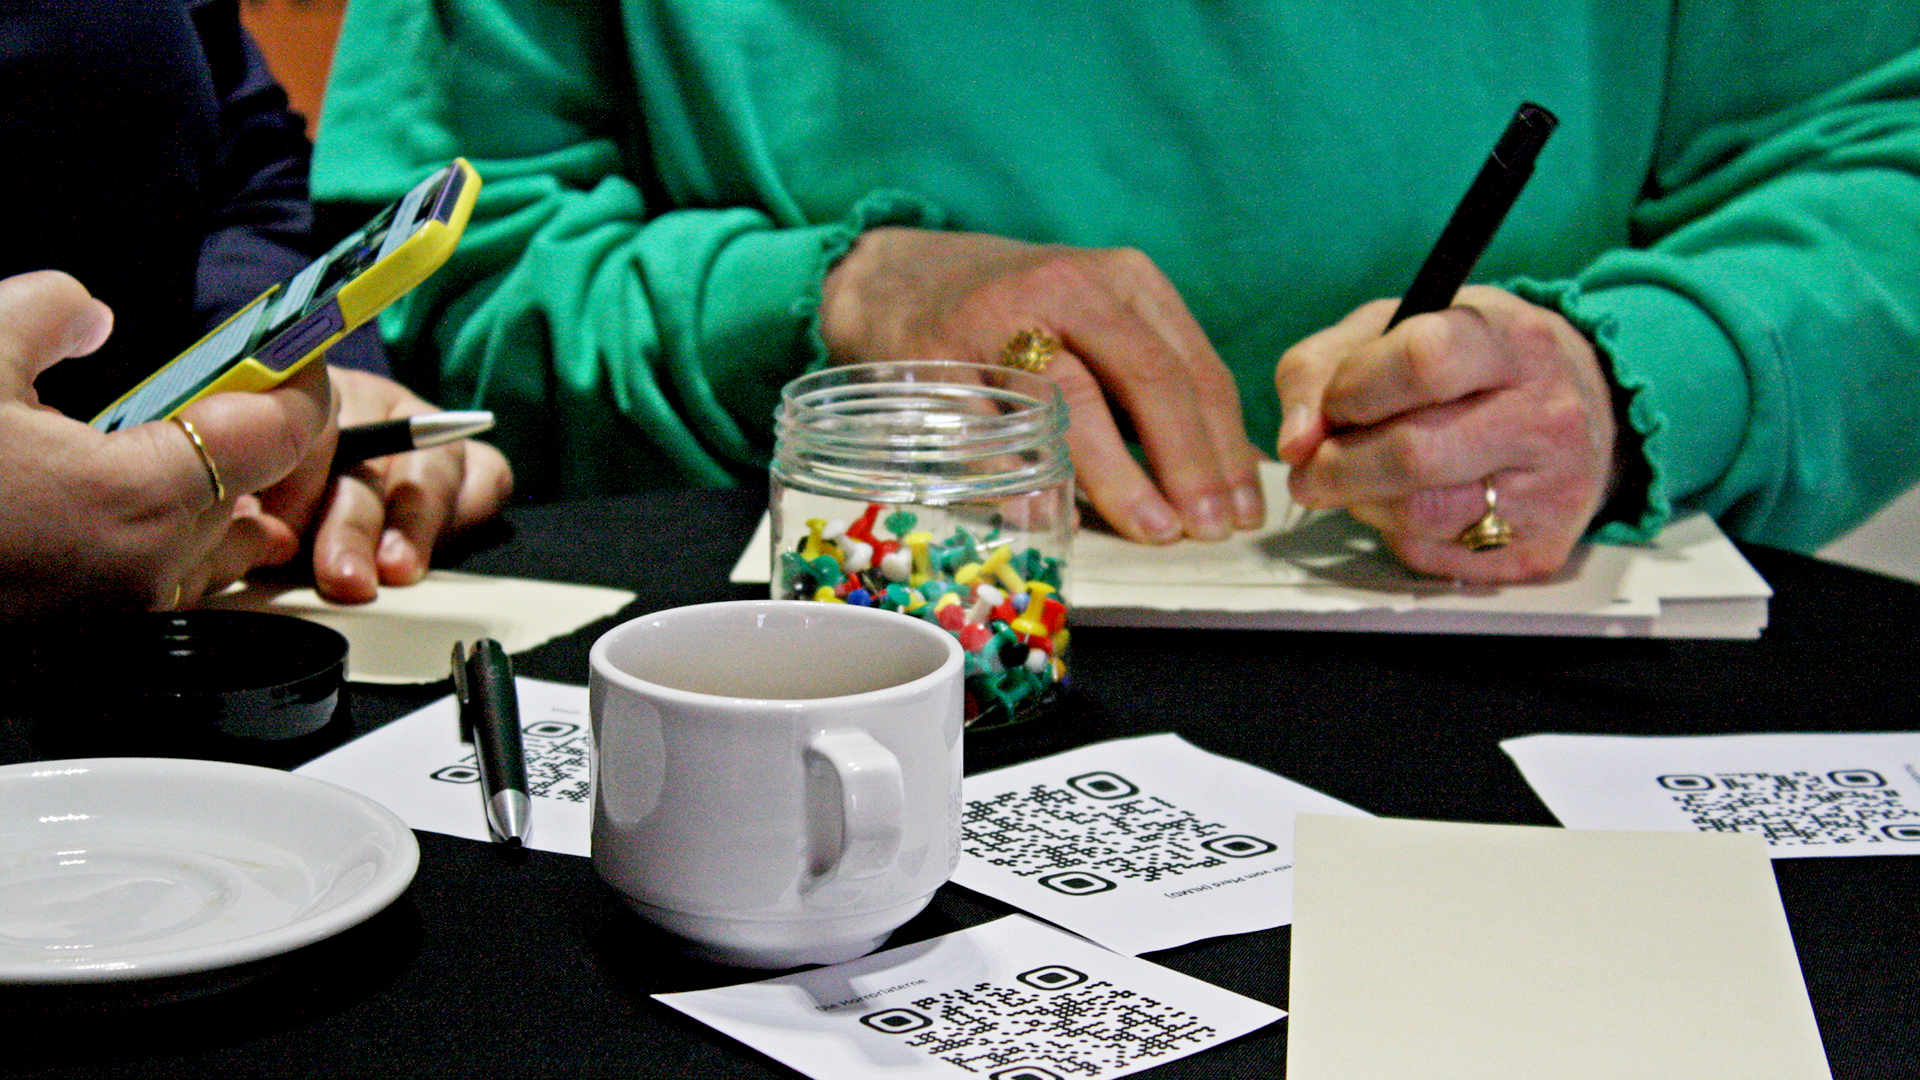 Zwei Handpaare, die Stifte und ein Smartphone halten. Eine Person schriebt etwas. Auf dem Tisch vor ihnen steht eine Tasse und liegen Pinnnadeln, Notizzettel und Zettel mit QR-Codes